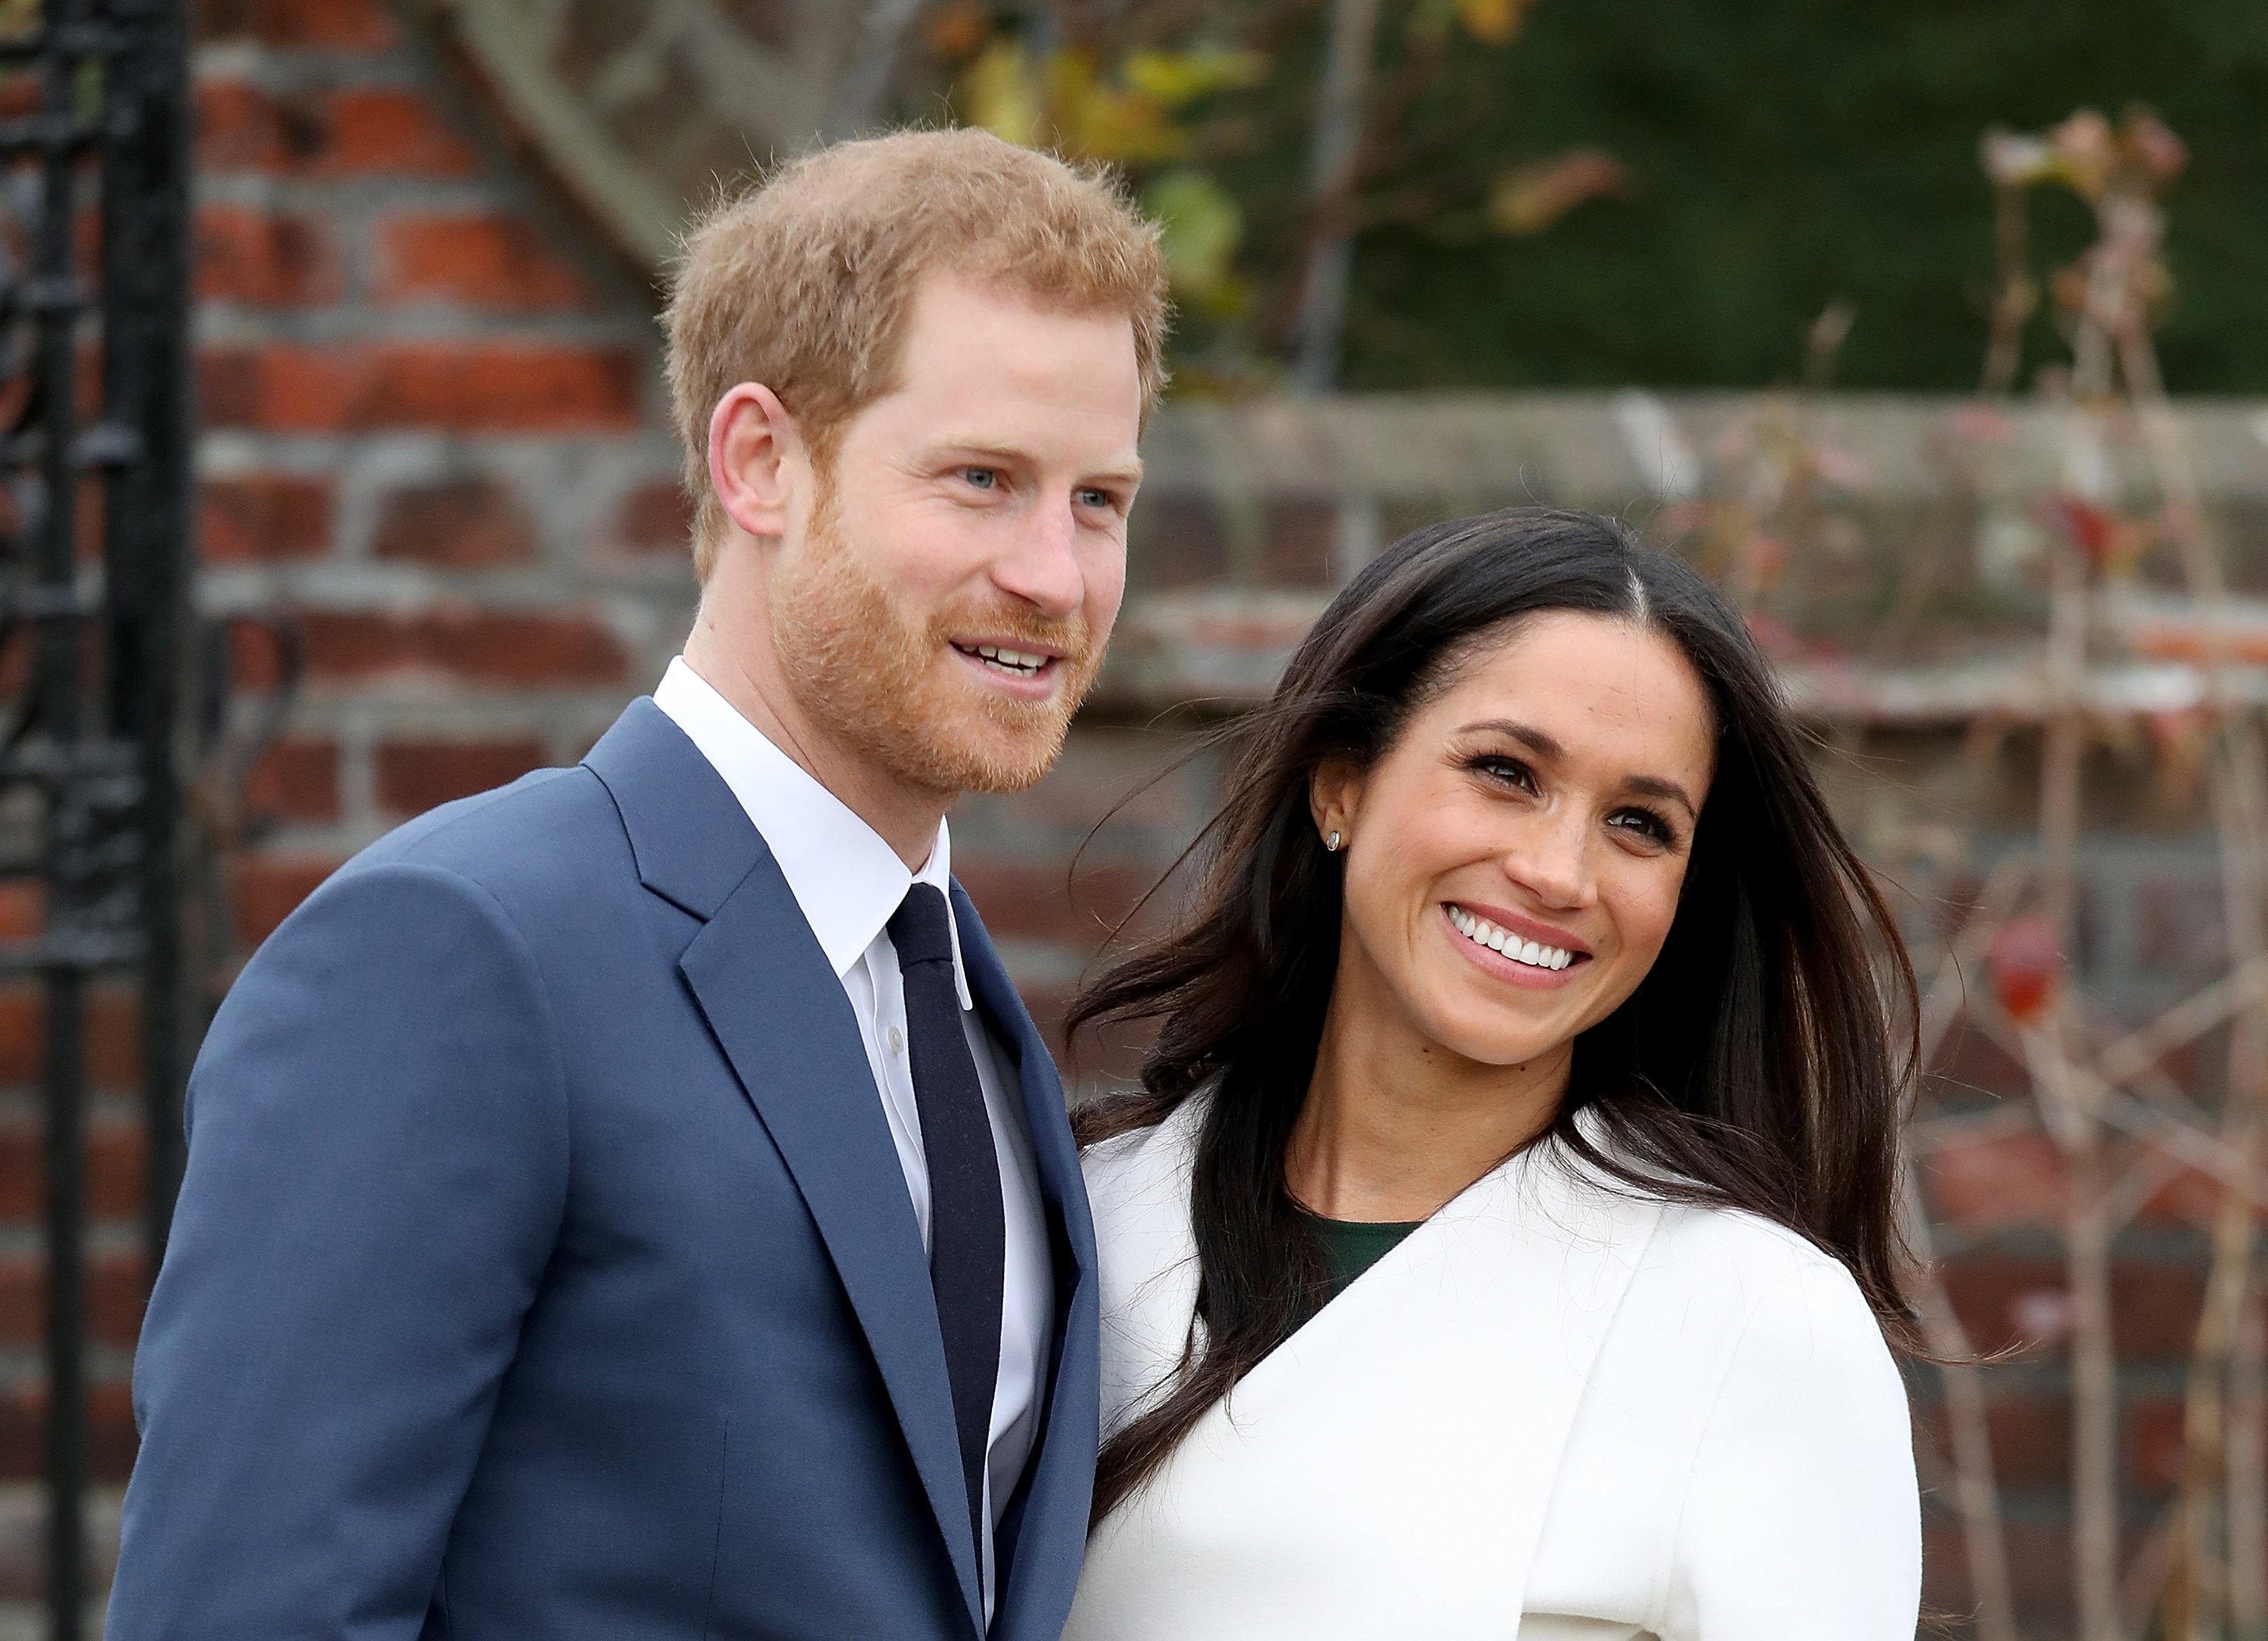 Le prince Harry et l'actrice Meghan Markle lors d'un photocall officiel pour annoncer leurs fiançailles au Sunken Gardens du palais de Kensington le 27 novembre 2017 à Londres, en Angleterre.| Source : Getty Images